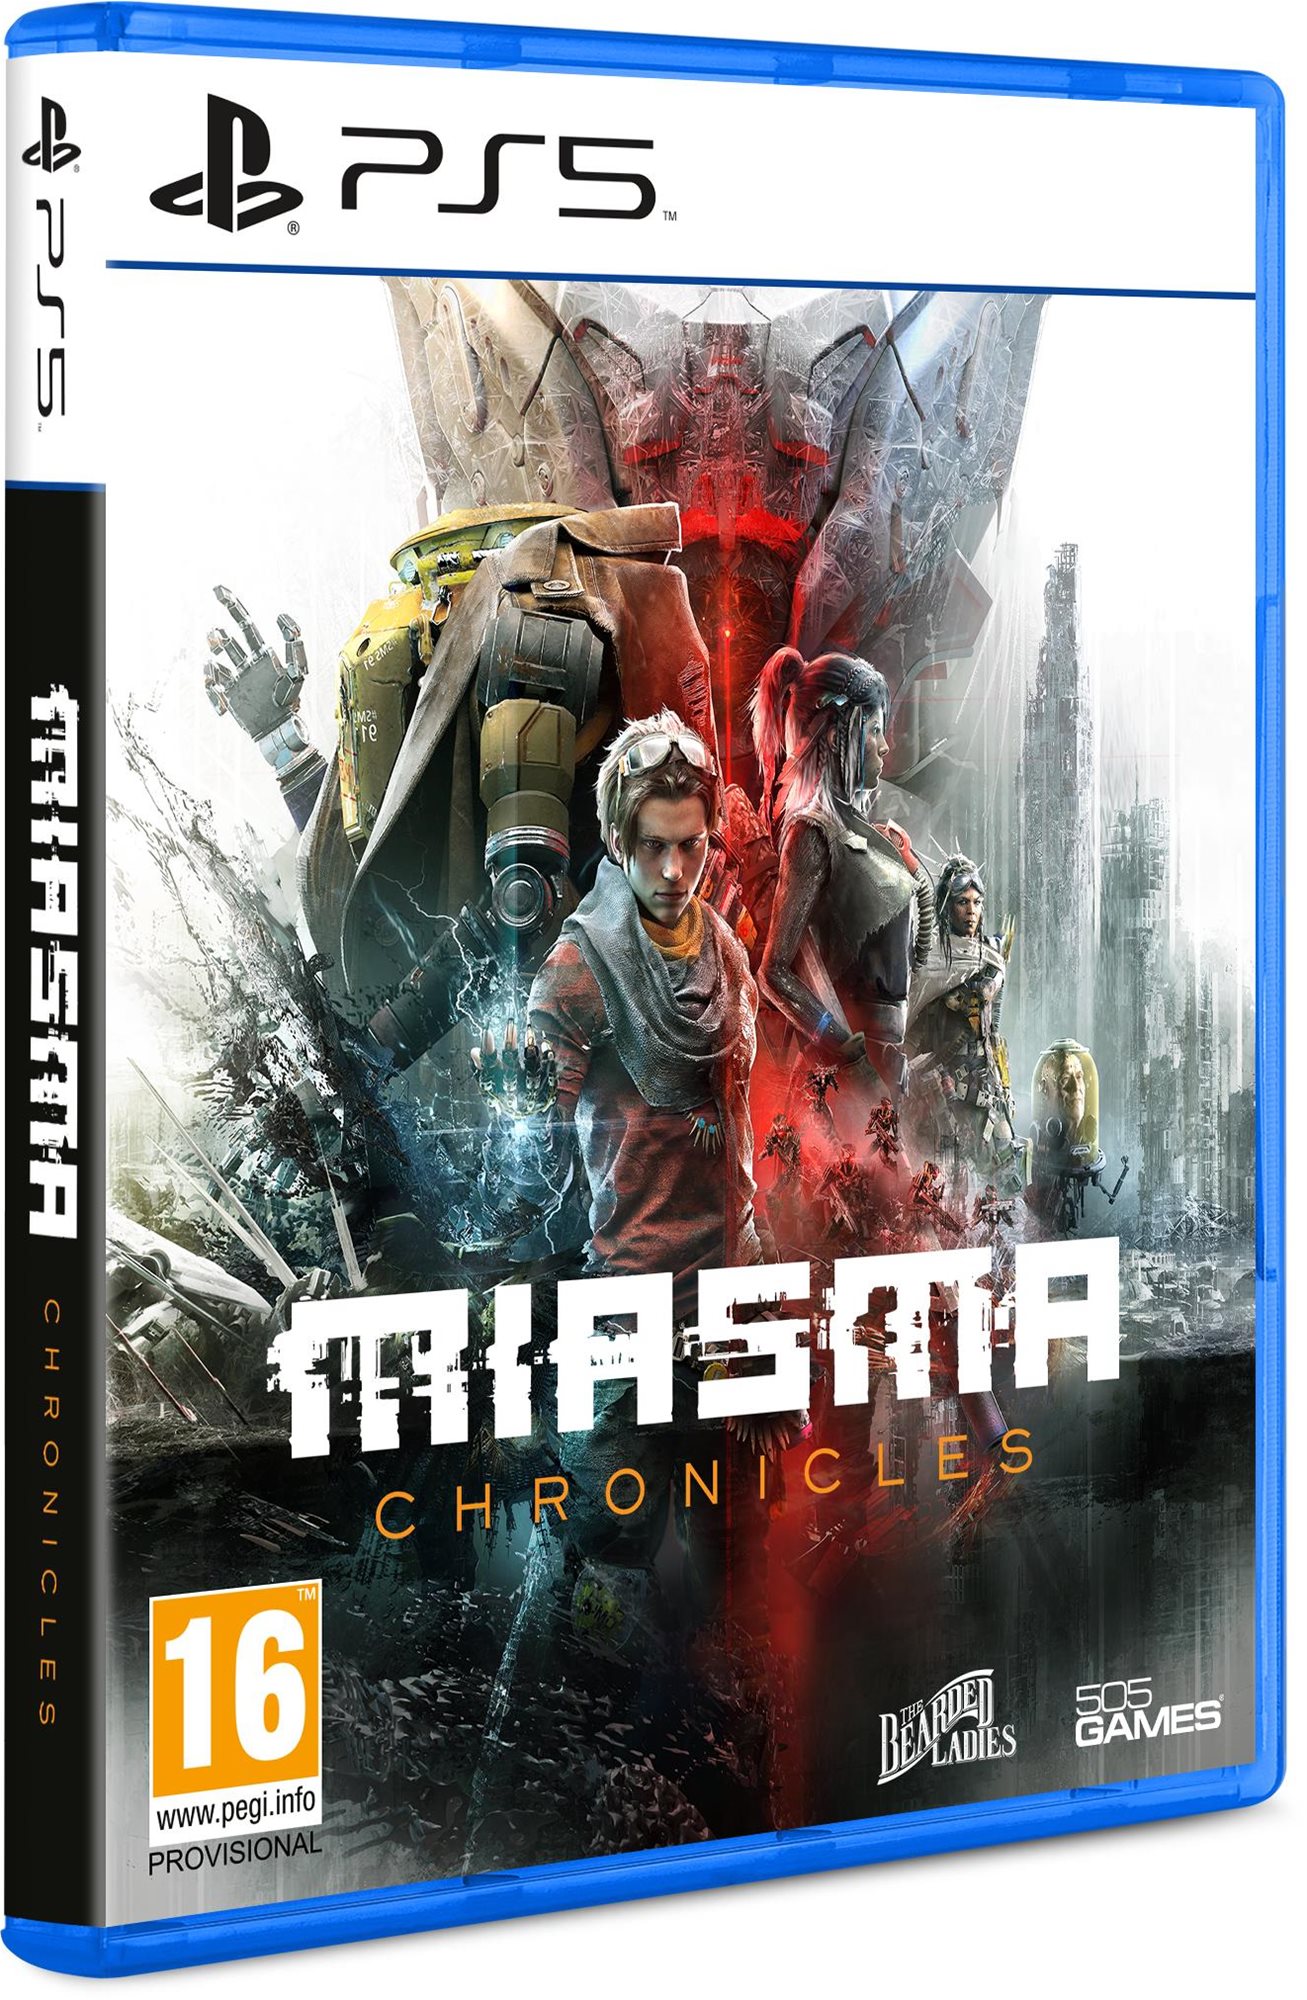 Konzol játék Miasma Chronicles - PS5